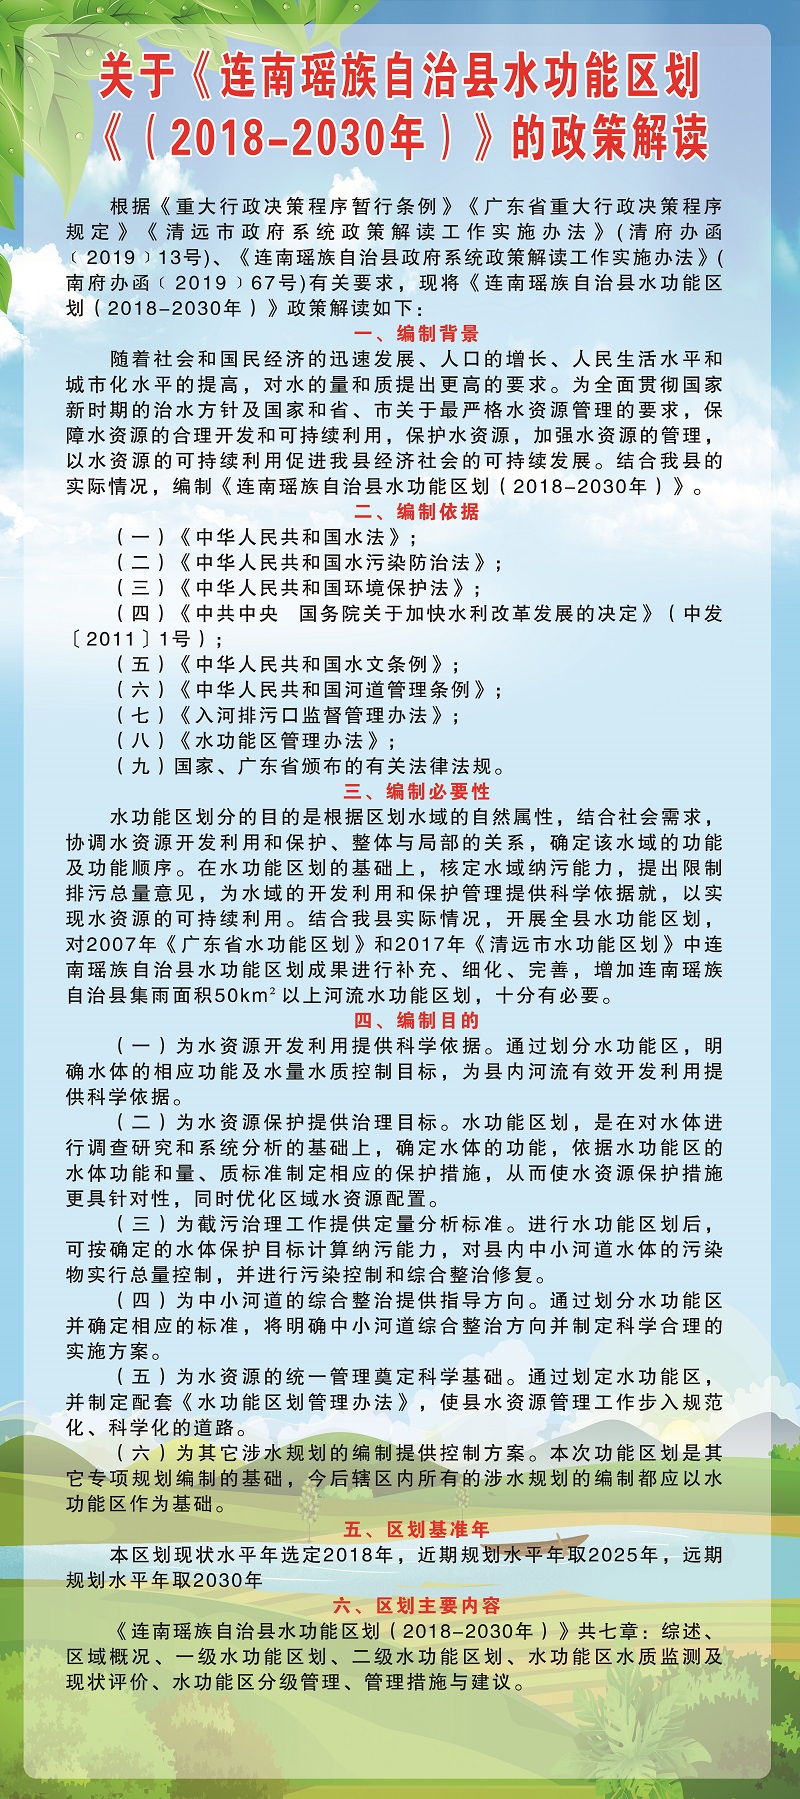 关于《连南瑶族自治县水功能区划（2018-2030年）》的政策解读（图文版）.jpg